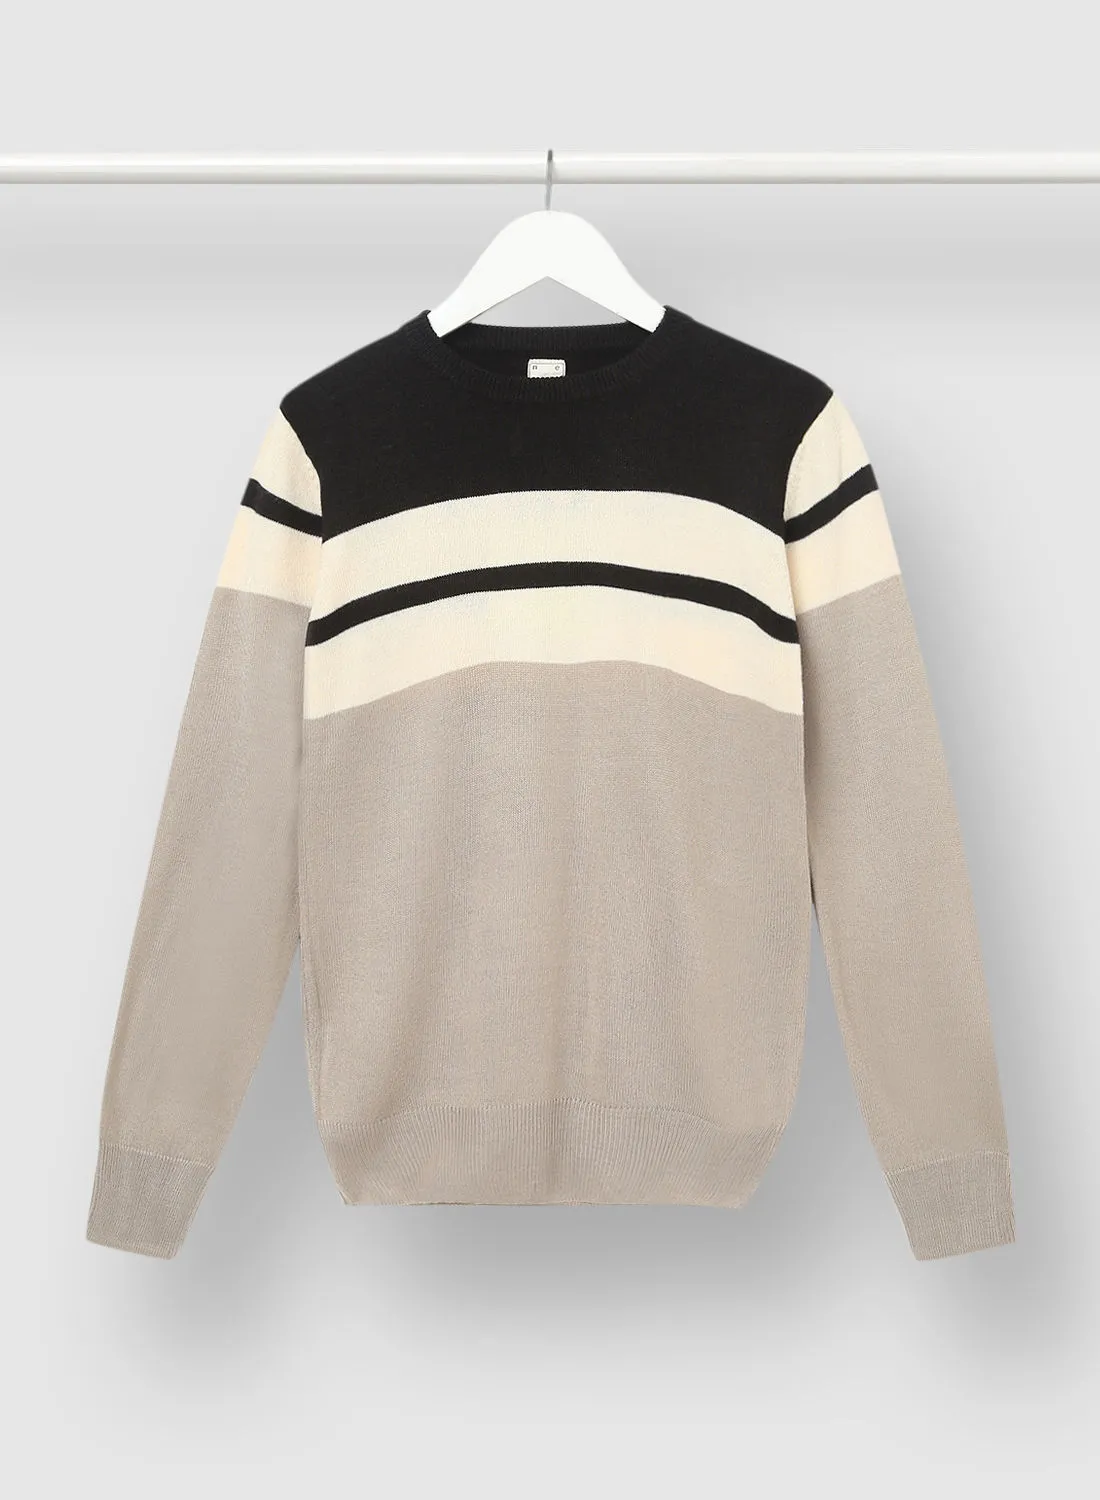 NEON Boy Casual Long Sleeve Sweater Black/Beige